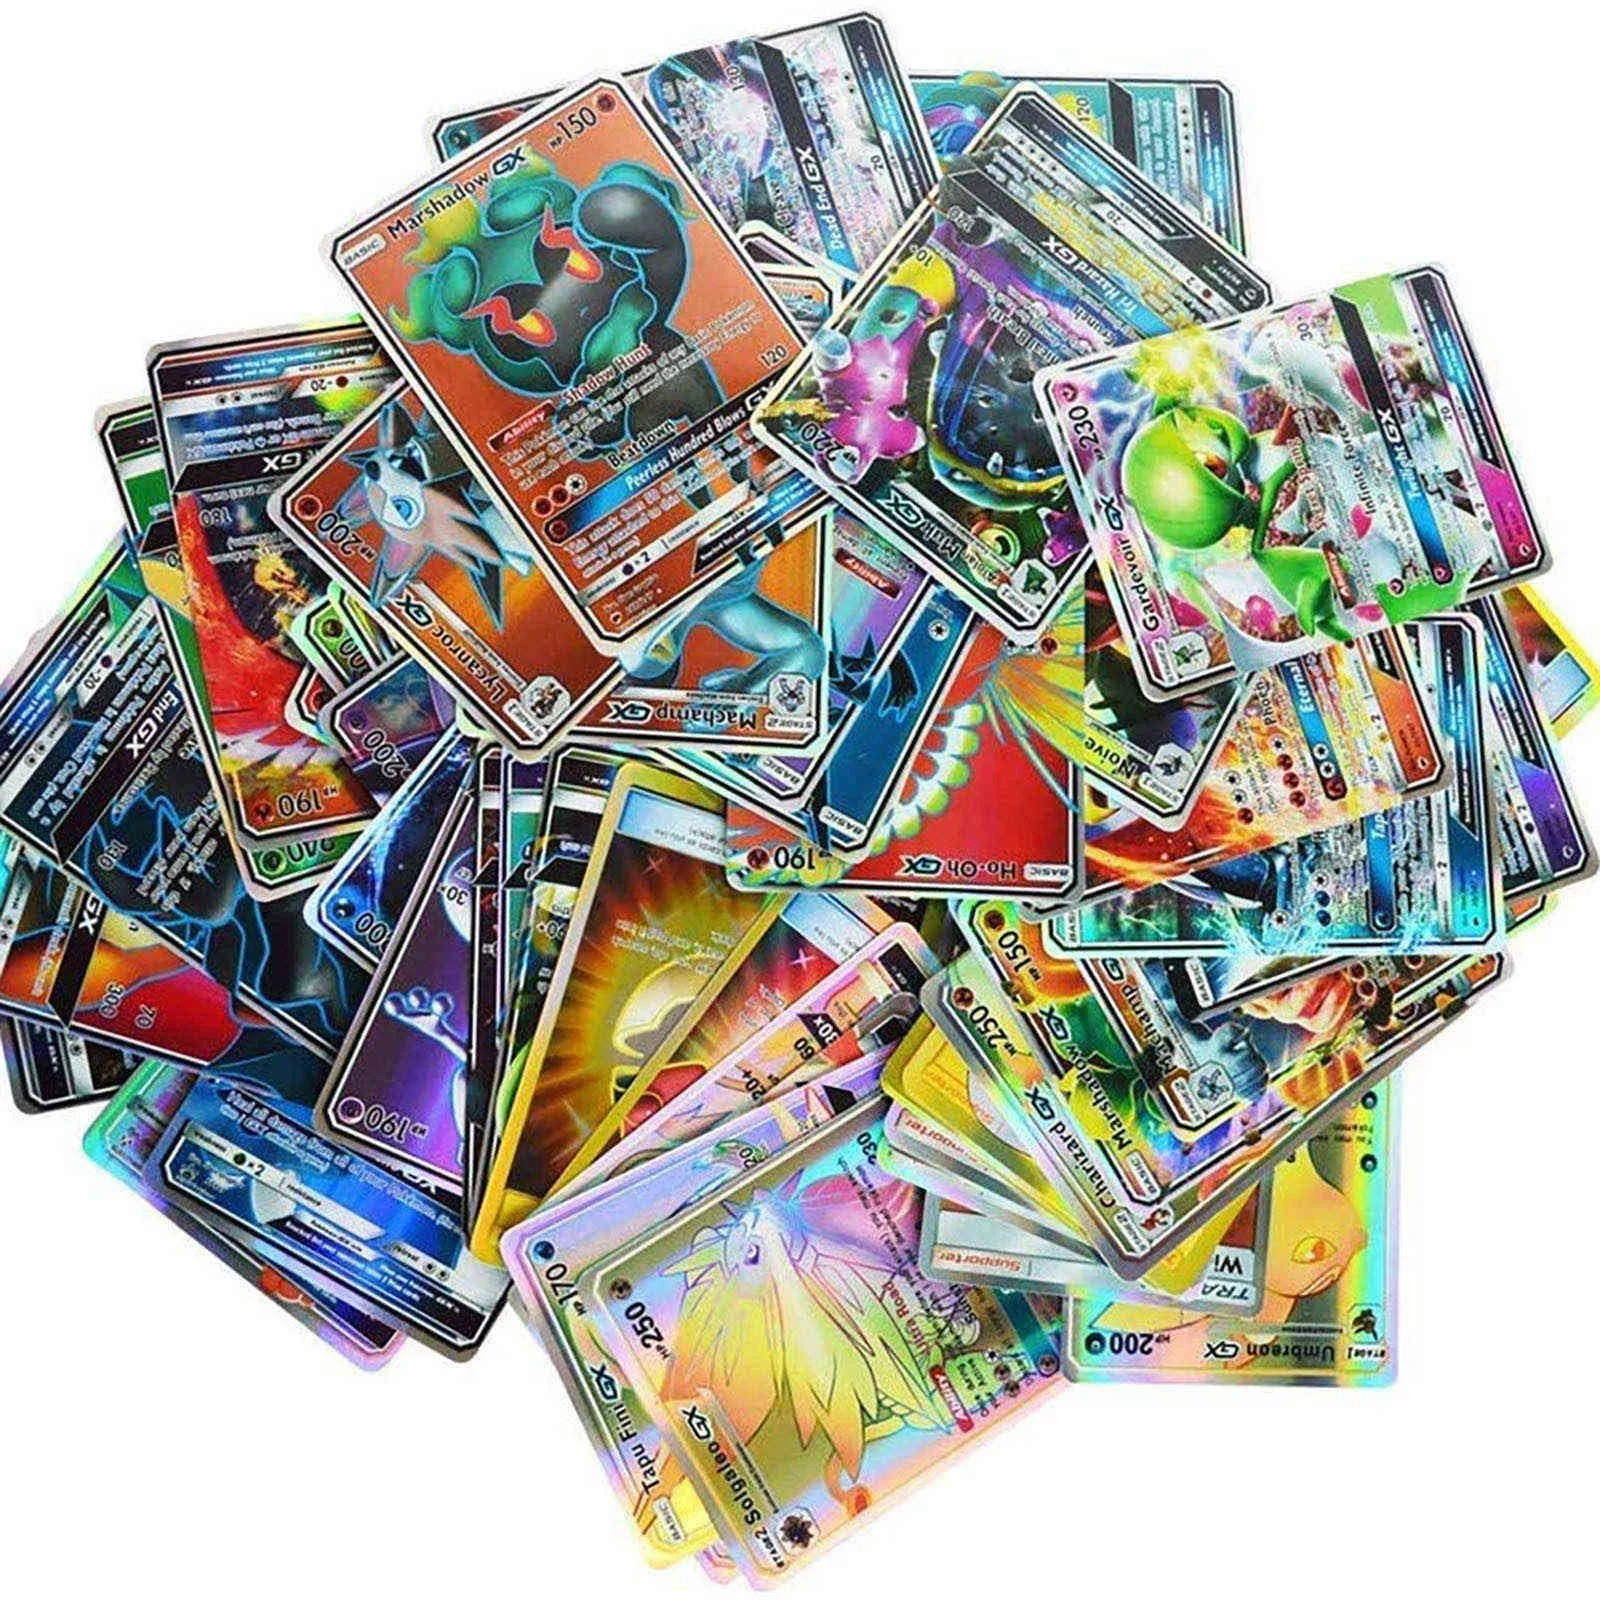 60 pièces complètes Gx Version française cartes paquet 60 cartes méga complètes, carte jouet, carte Prare Boite De jeux jouets jeu de cartes dessin animé G1125